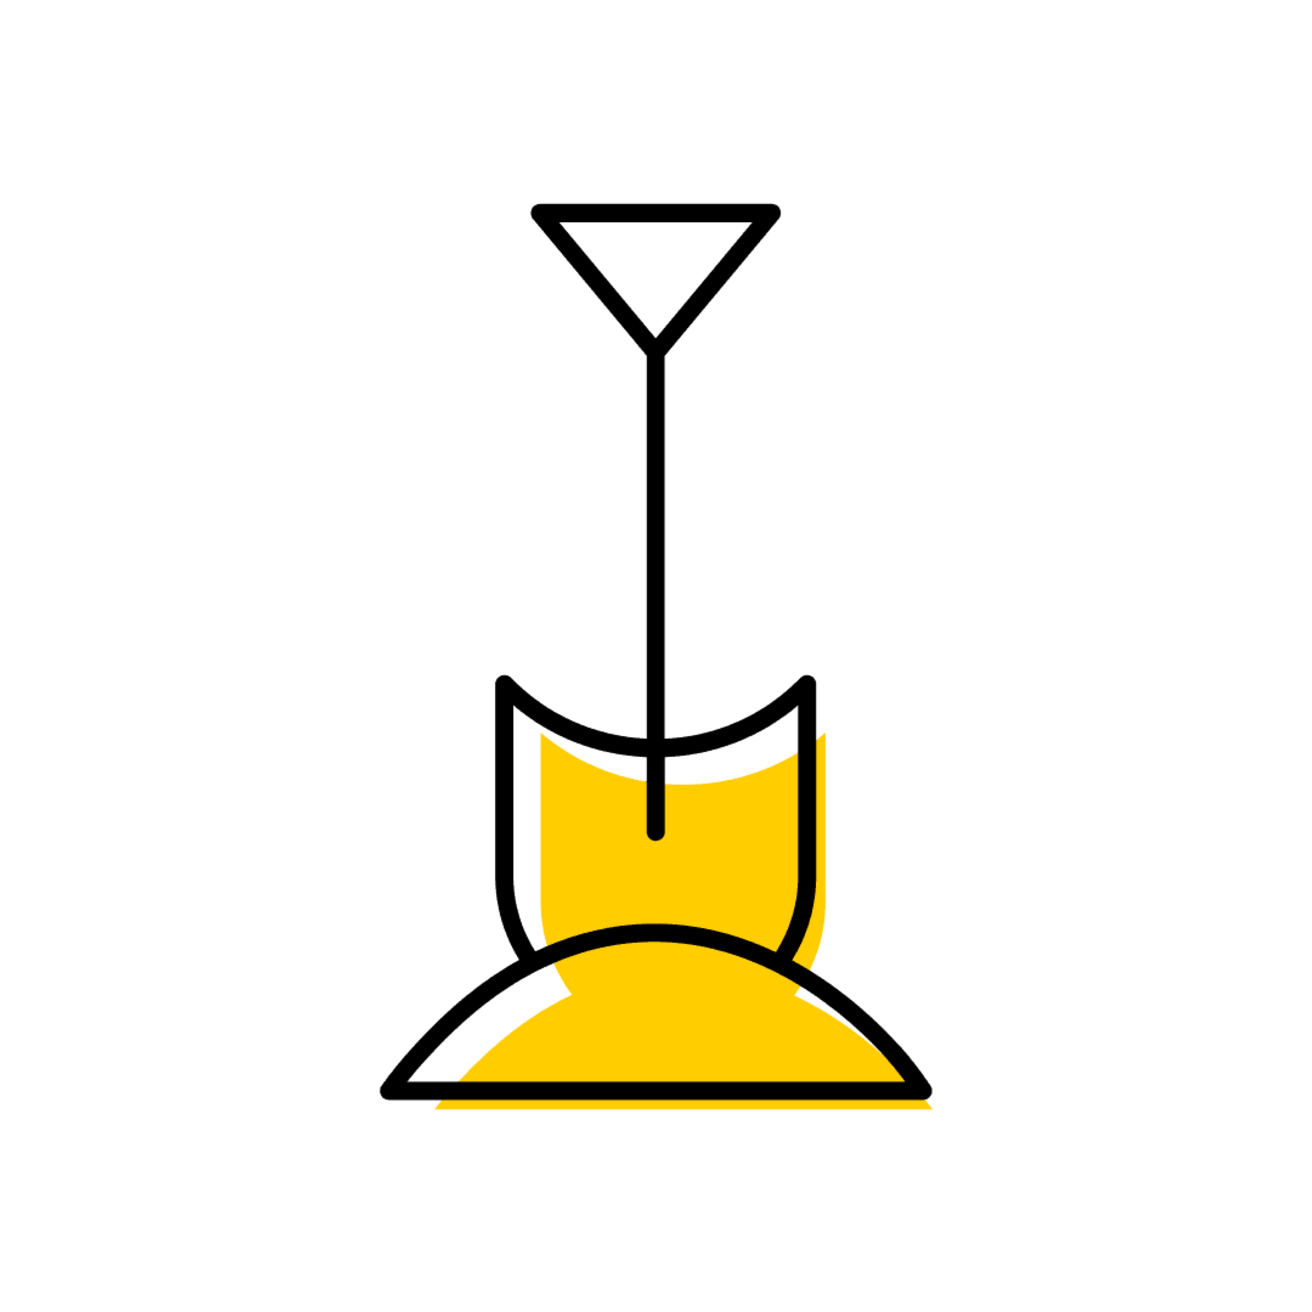 icon of a shovel